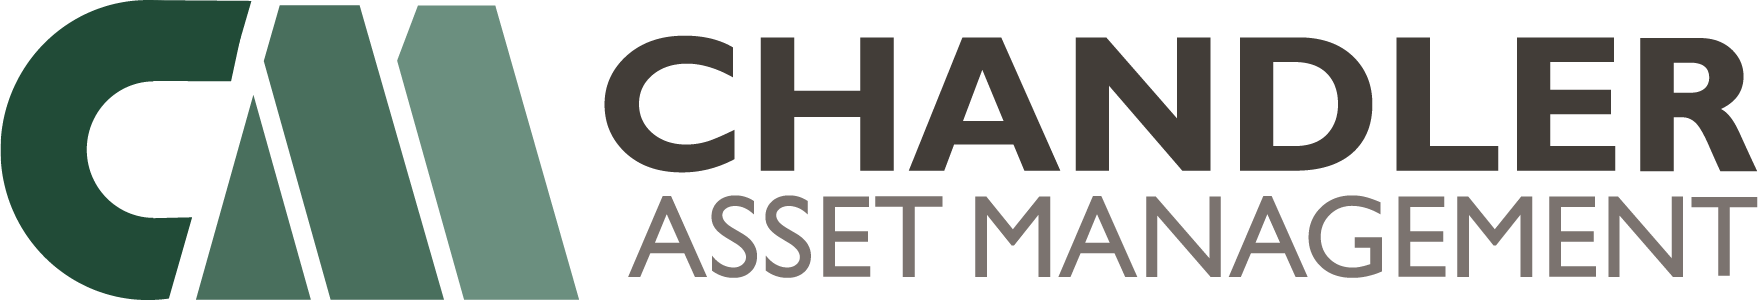 Chandler Asset Management